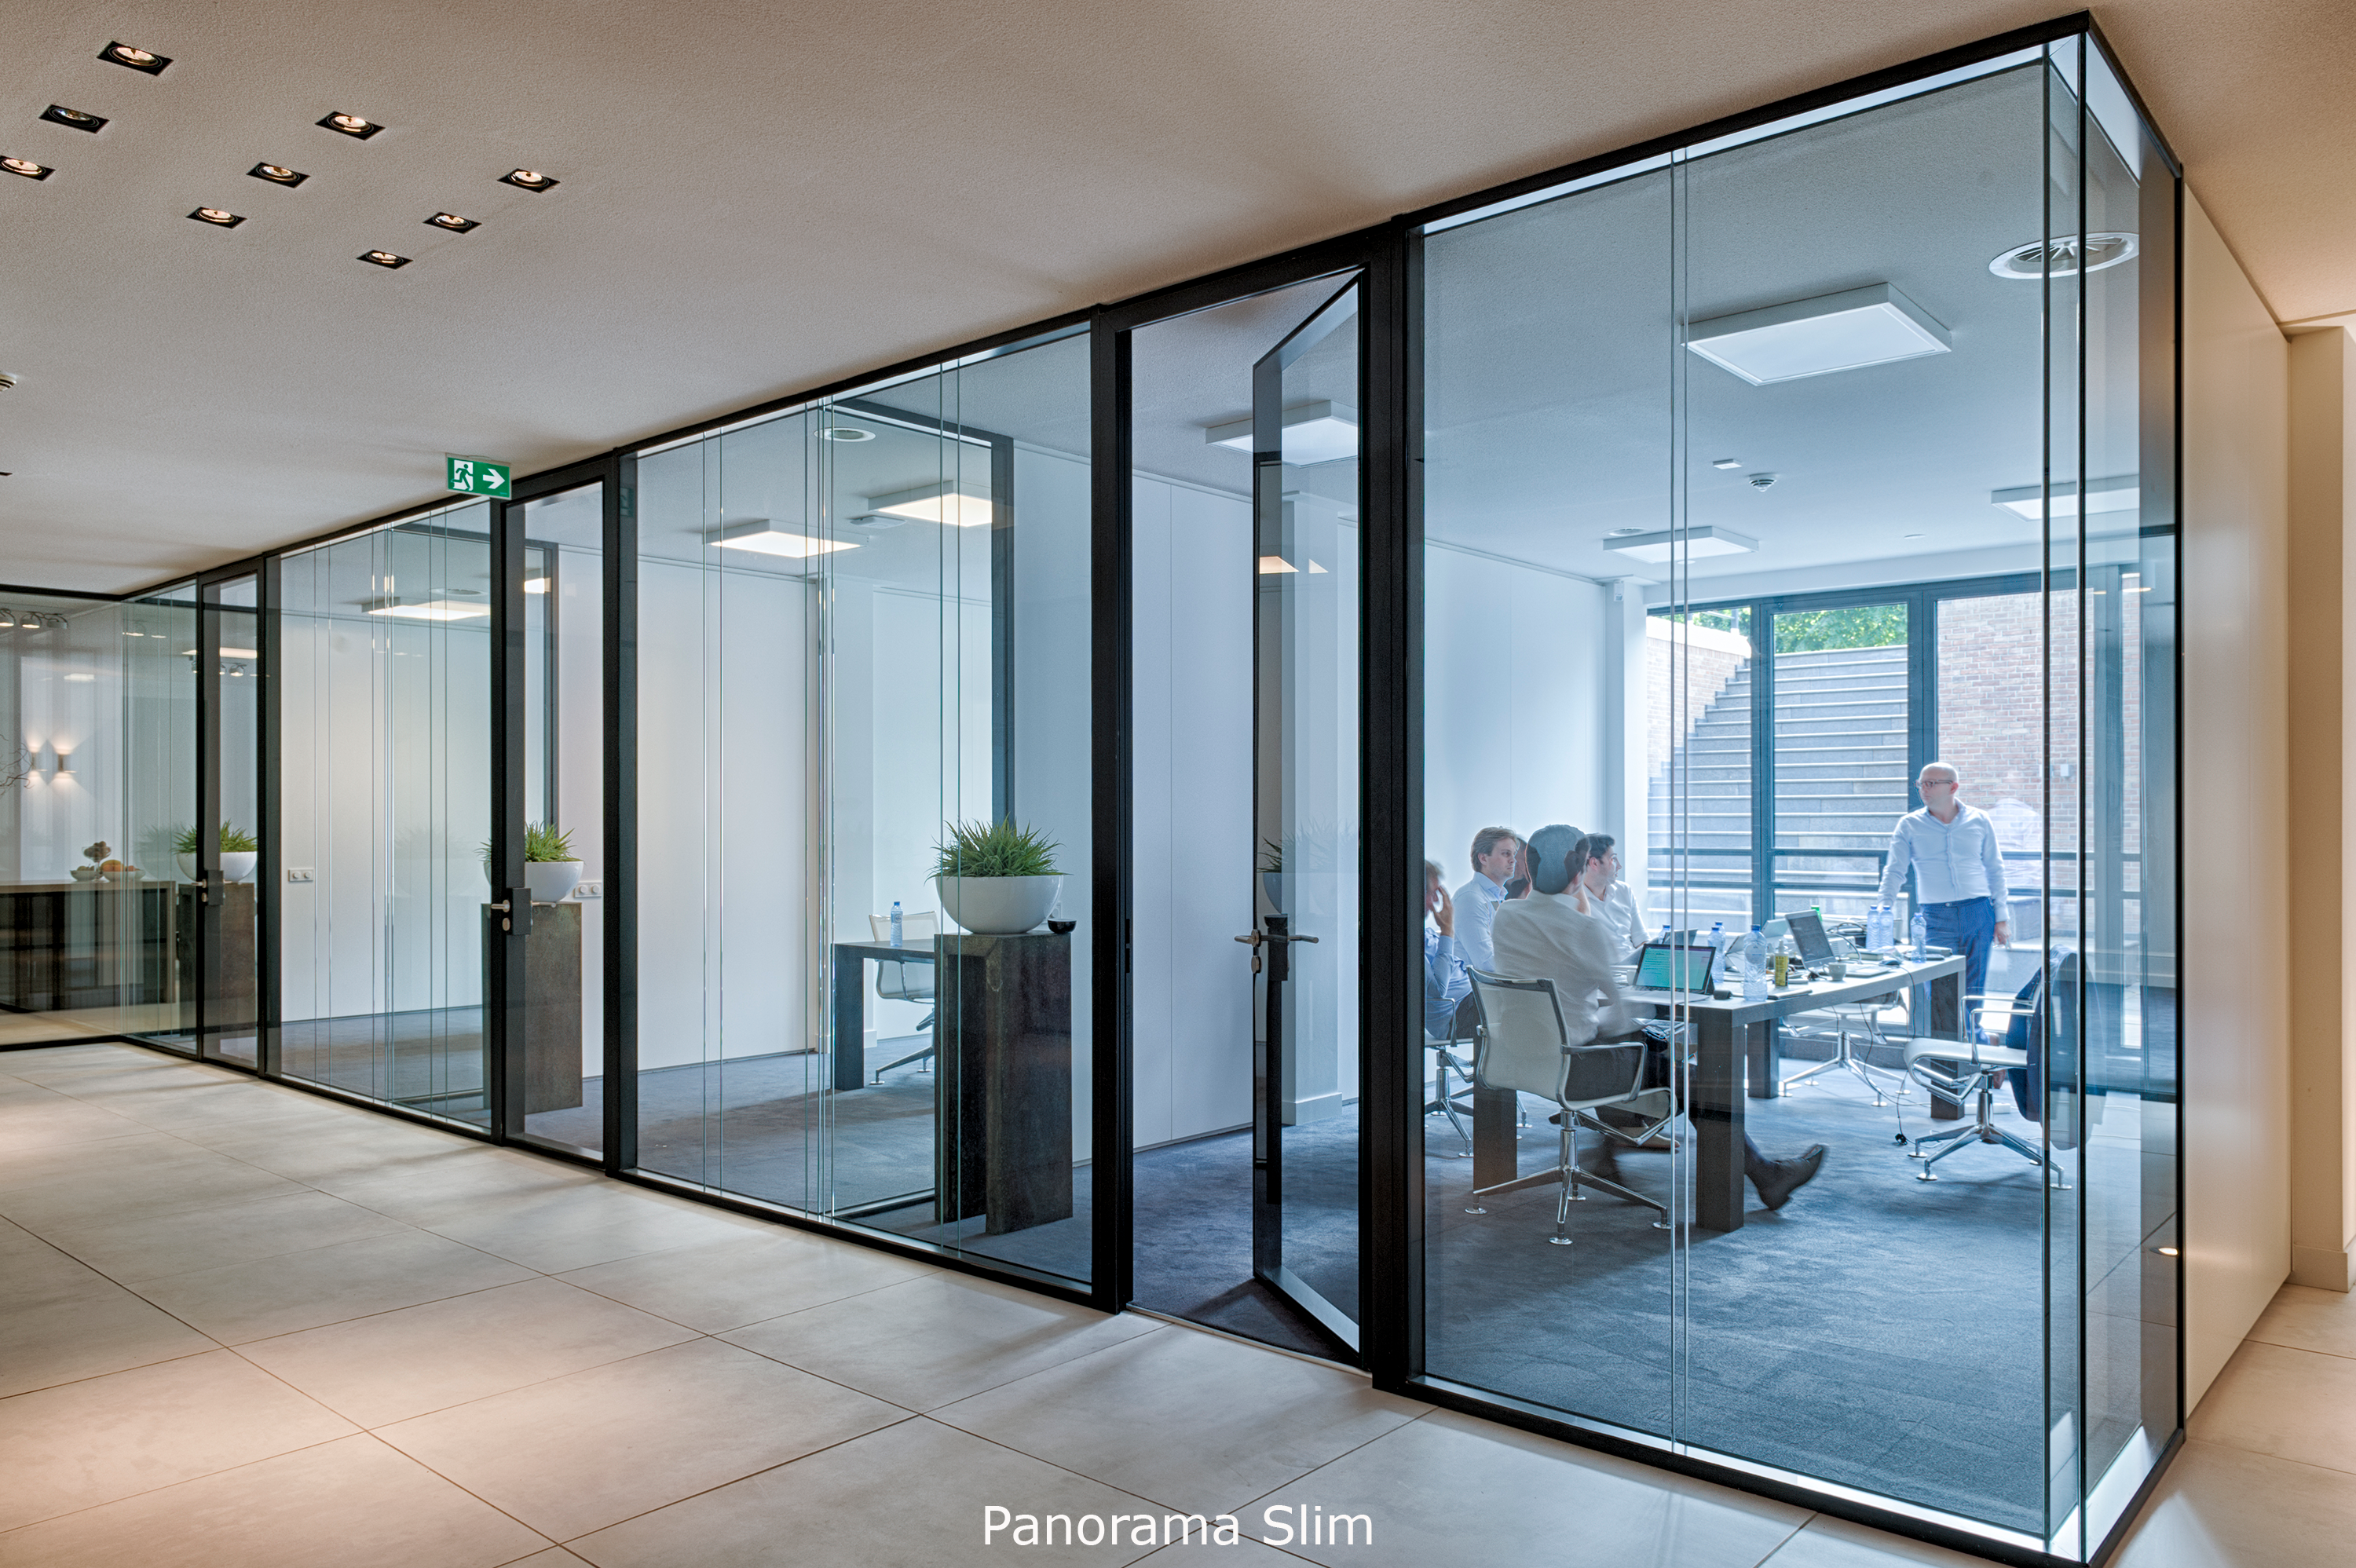 3 kantoorruimtes met dubbele glazen scheidingswanden en vergaderende mensen